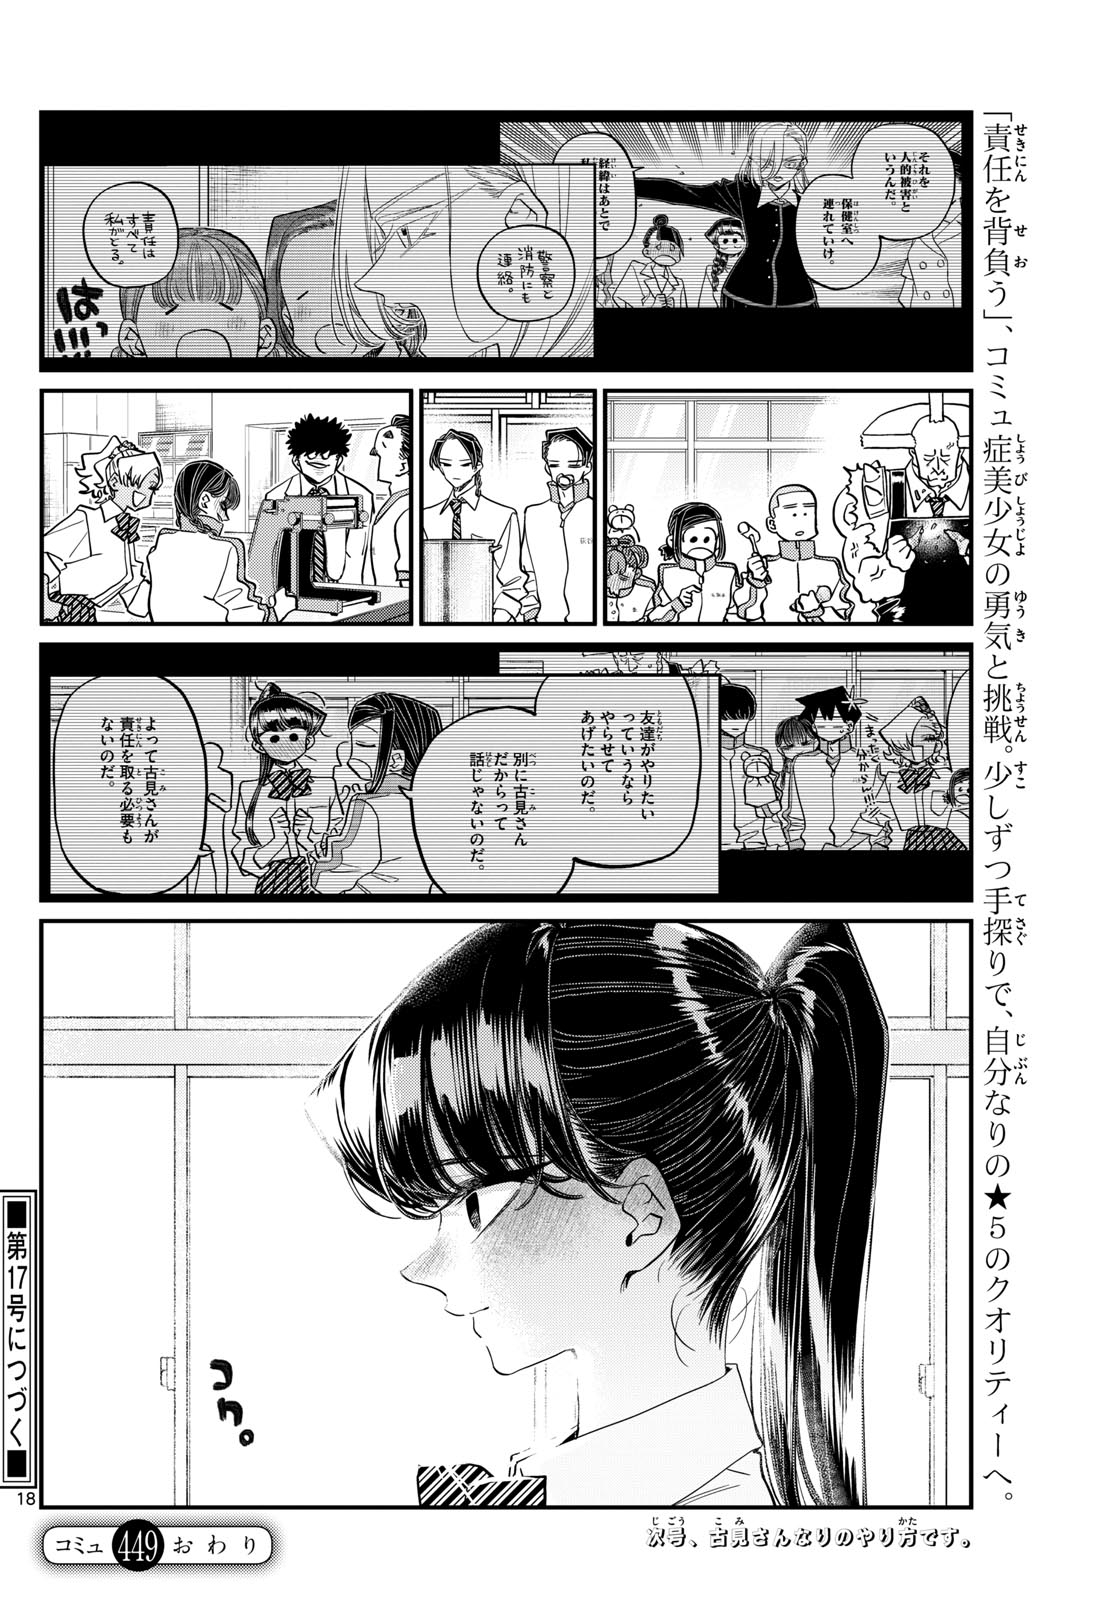 Komi-san wa Komyushou Desu - Chapter 449 - Page 18